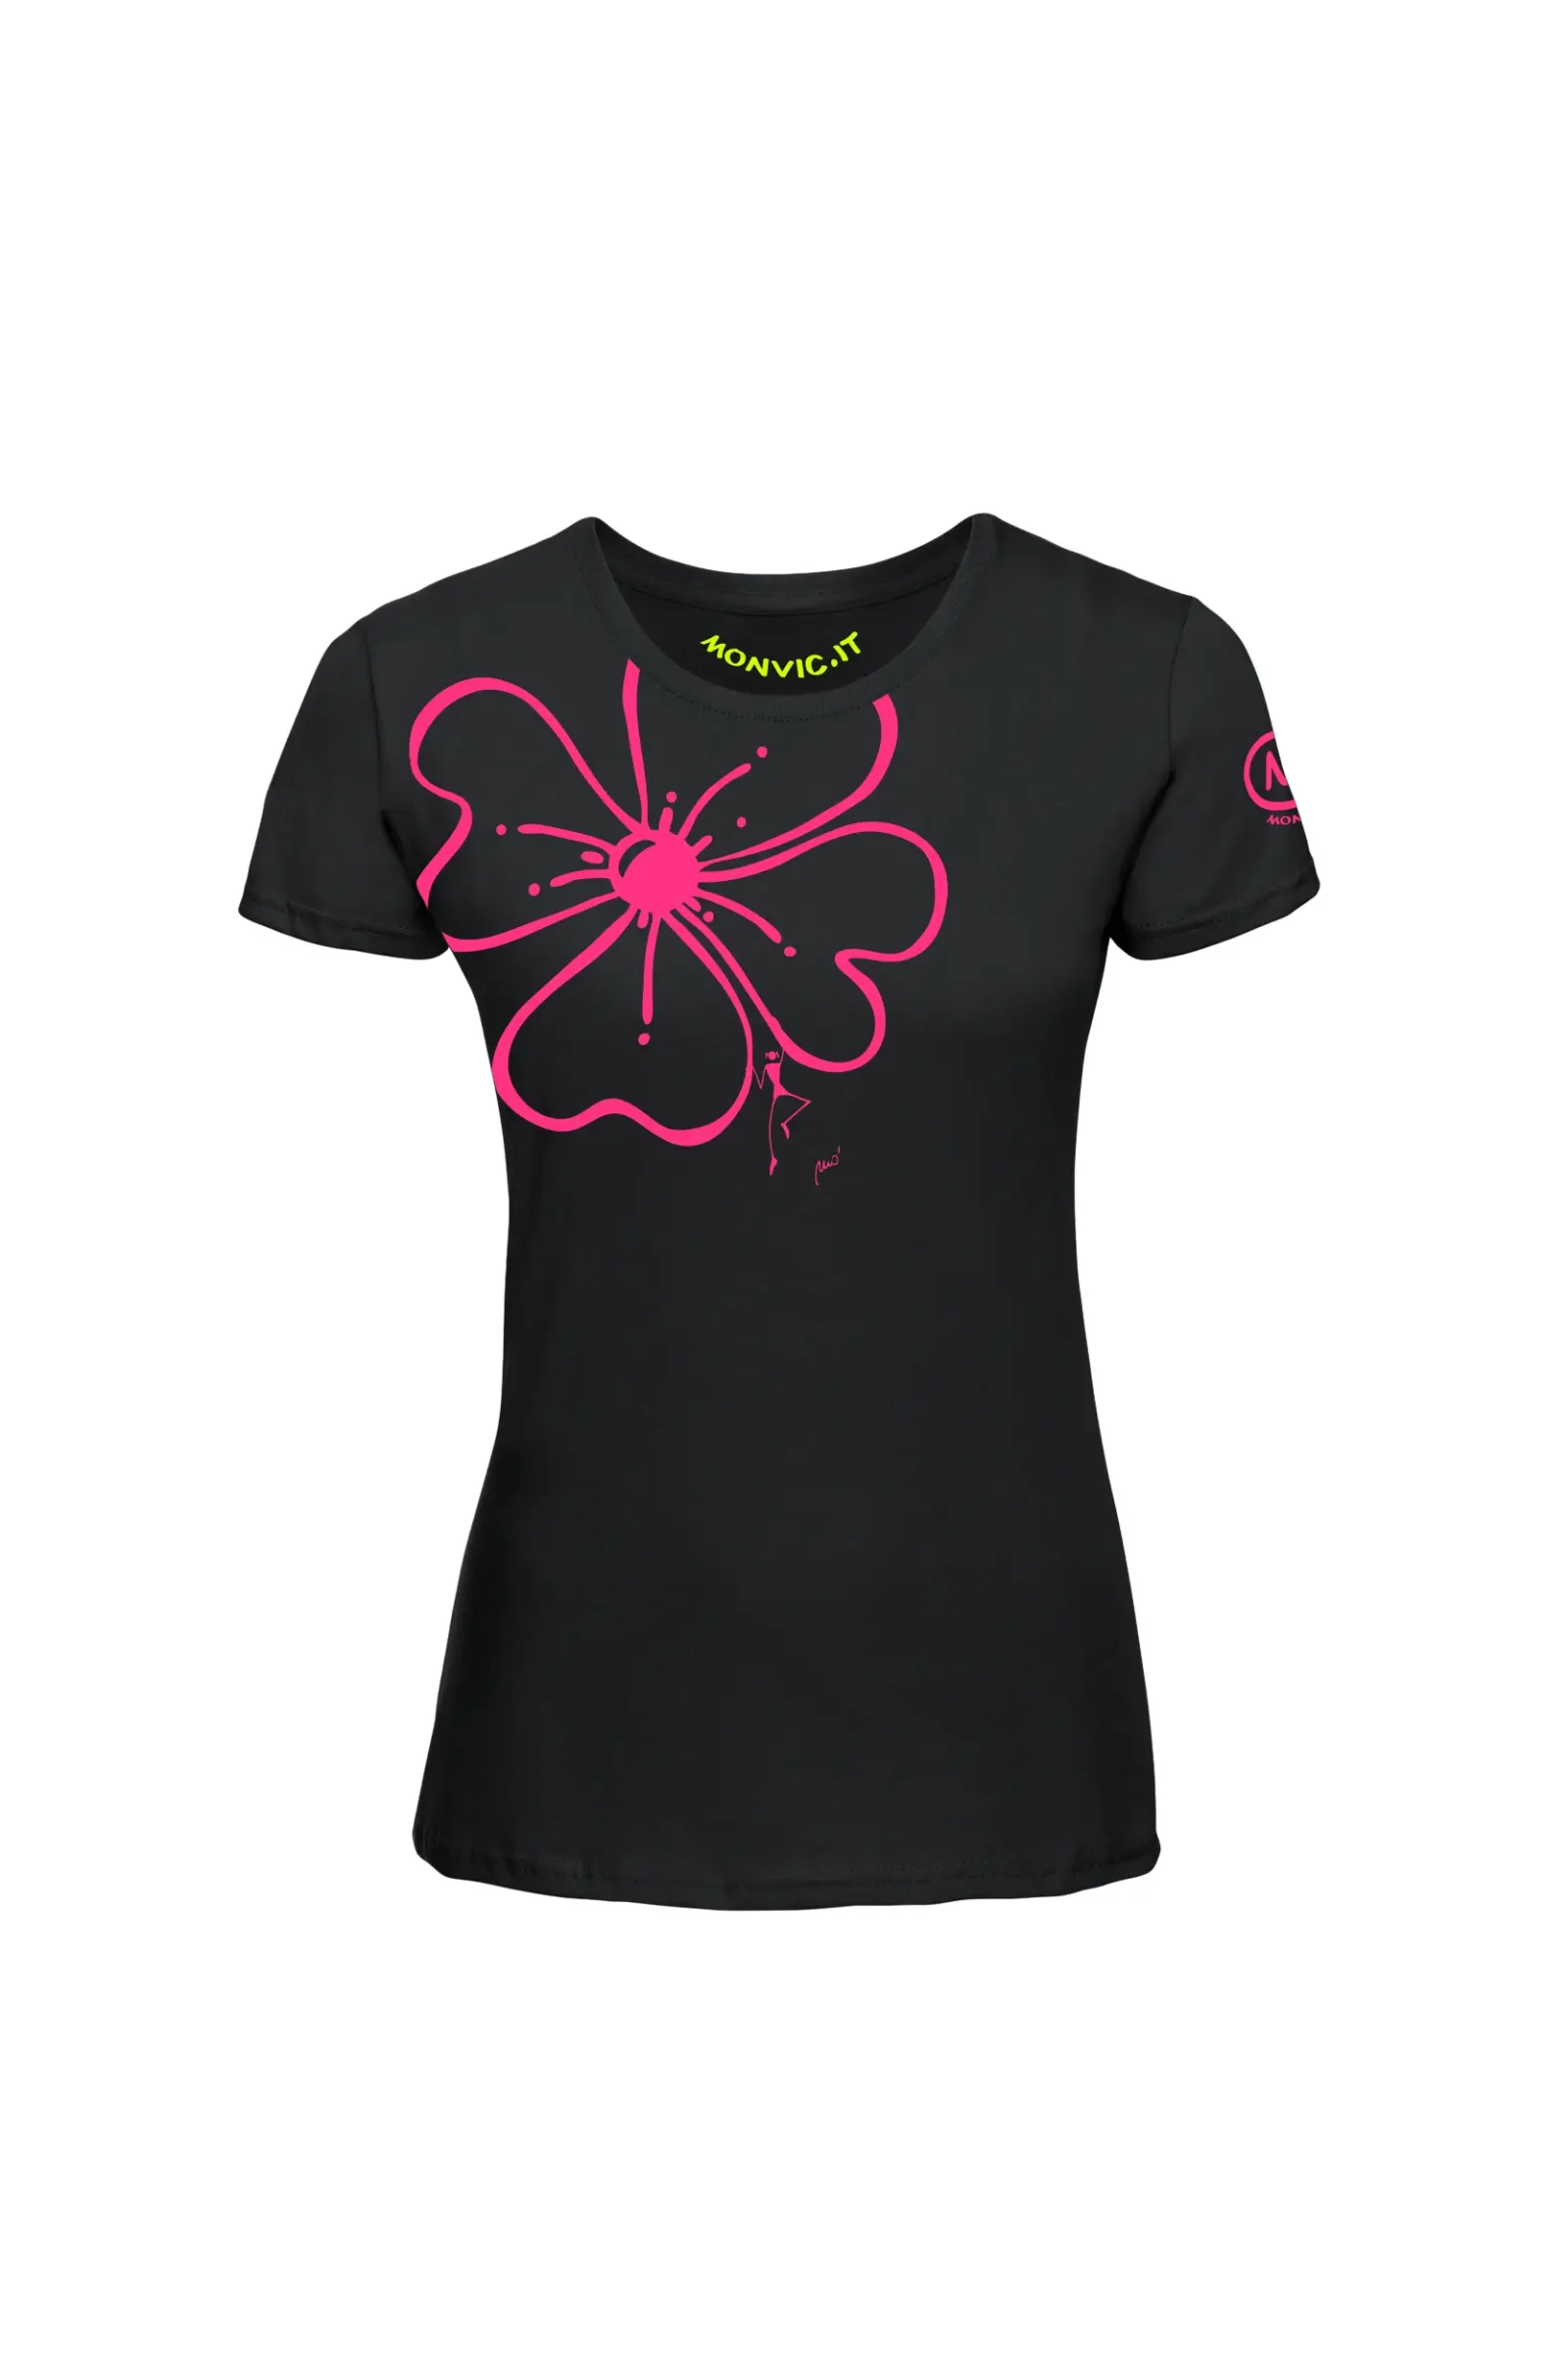 T-shirt arrampicata donna - cotone nero - "Superflower" SHARON MONVIC